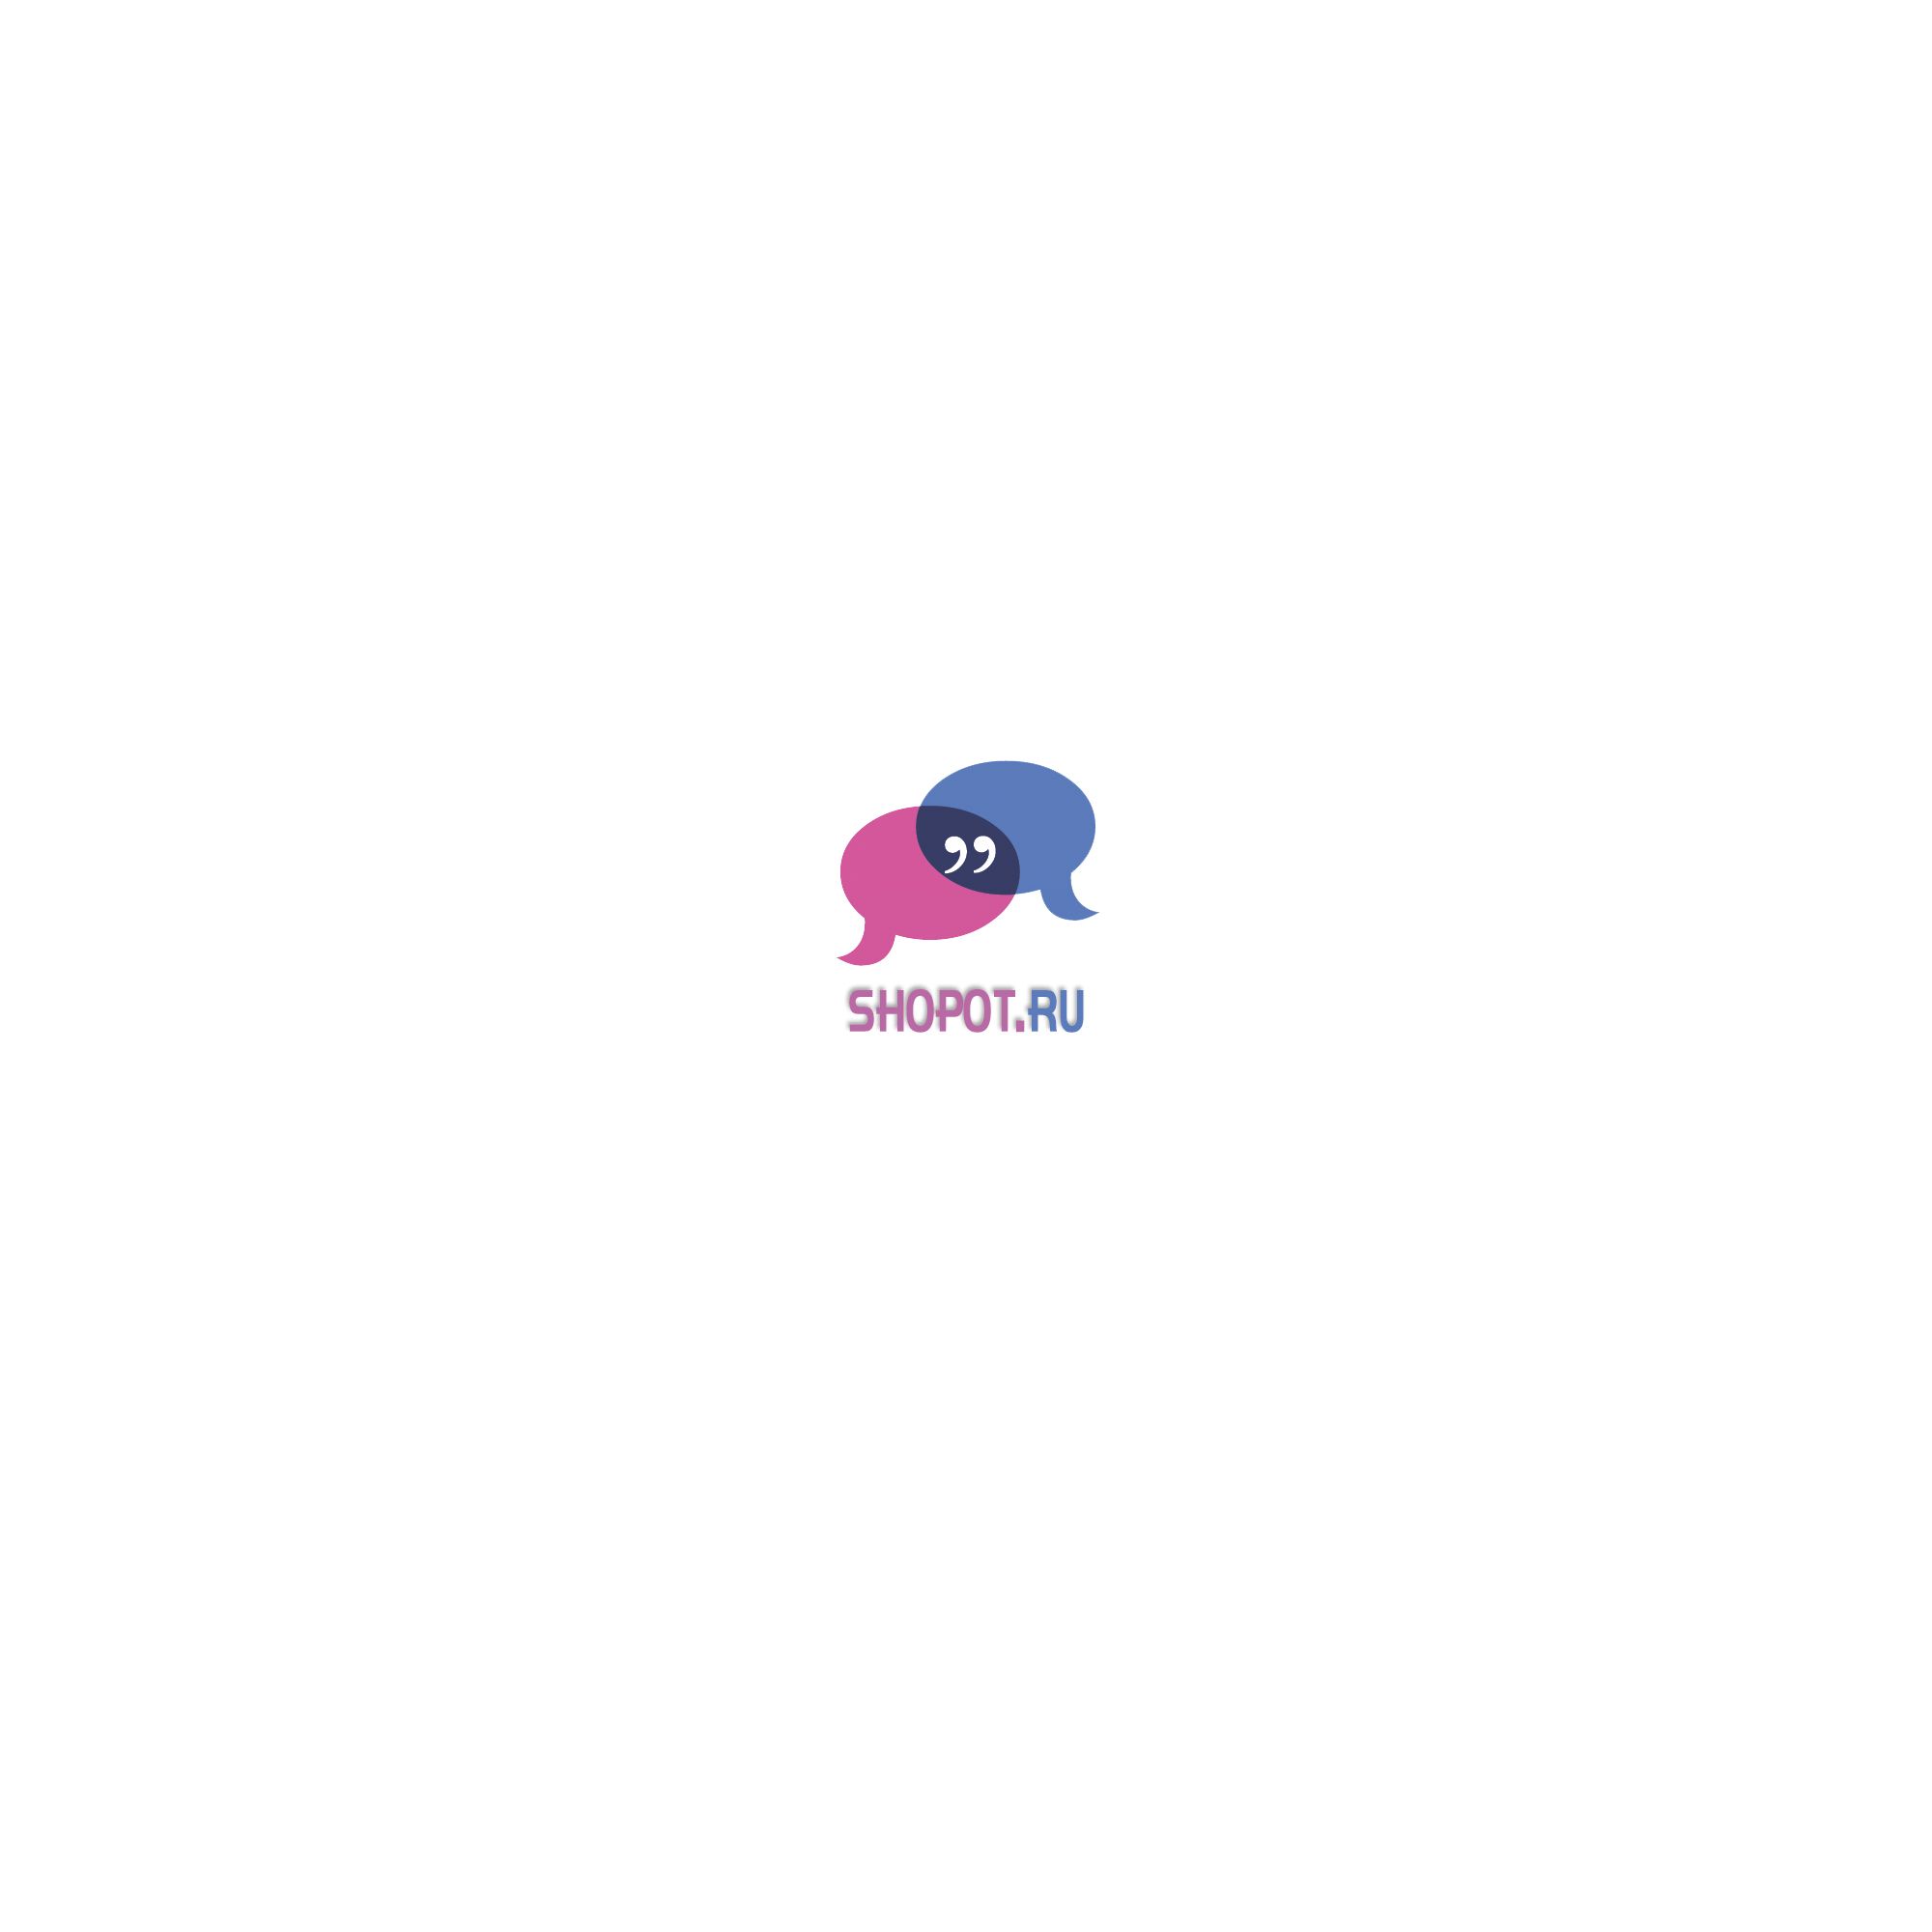 Логотип интернет-сообщества о покупках  - дизайнер jura_project